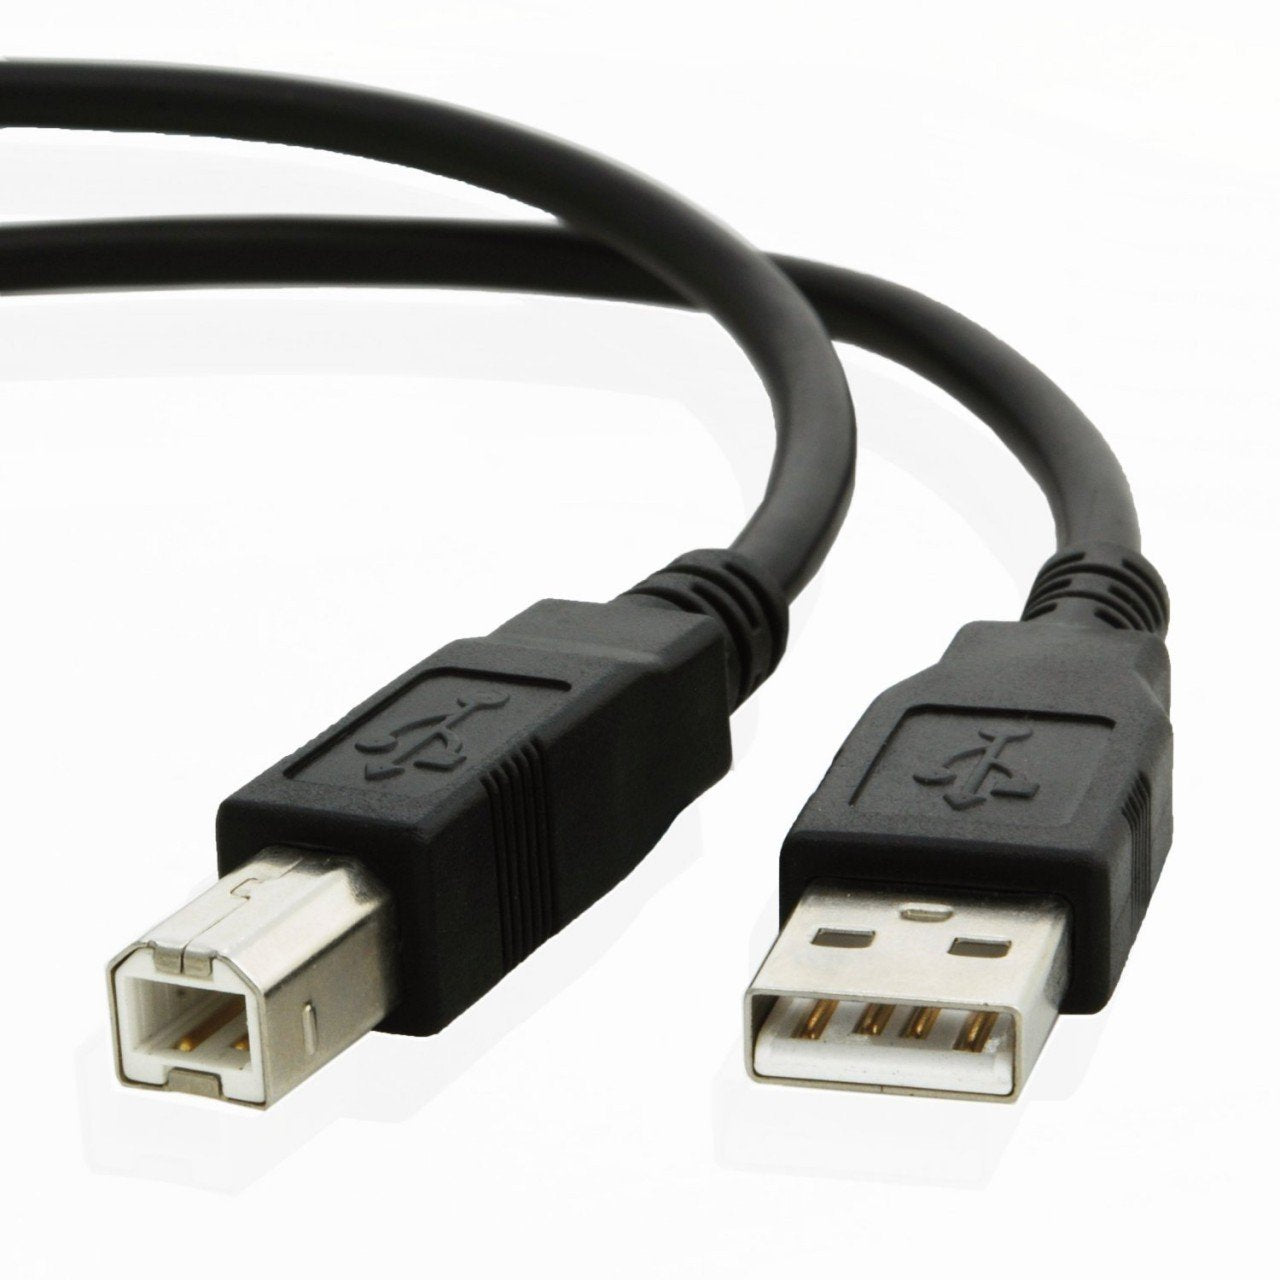 USB cable for Hp DESKJET 3755